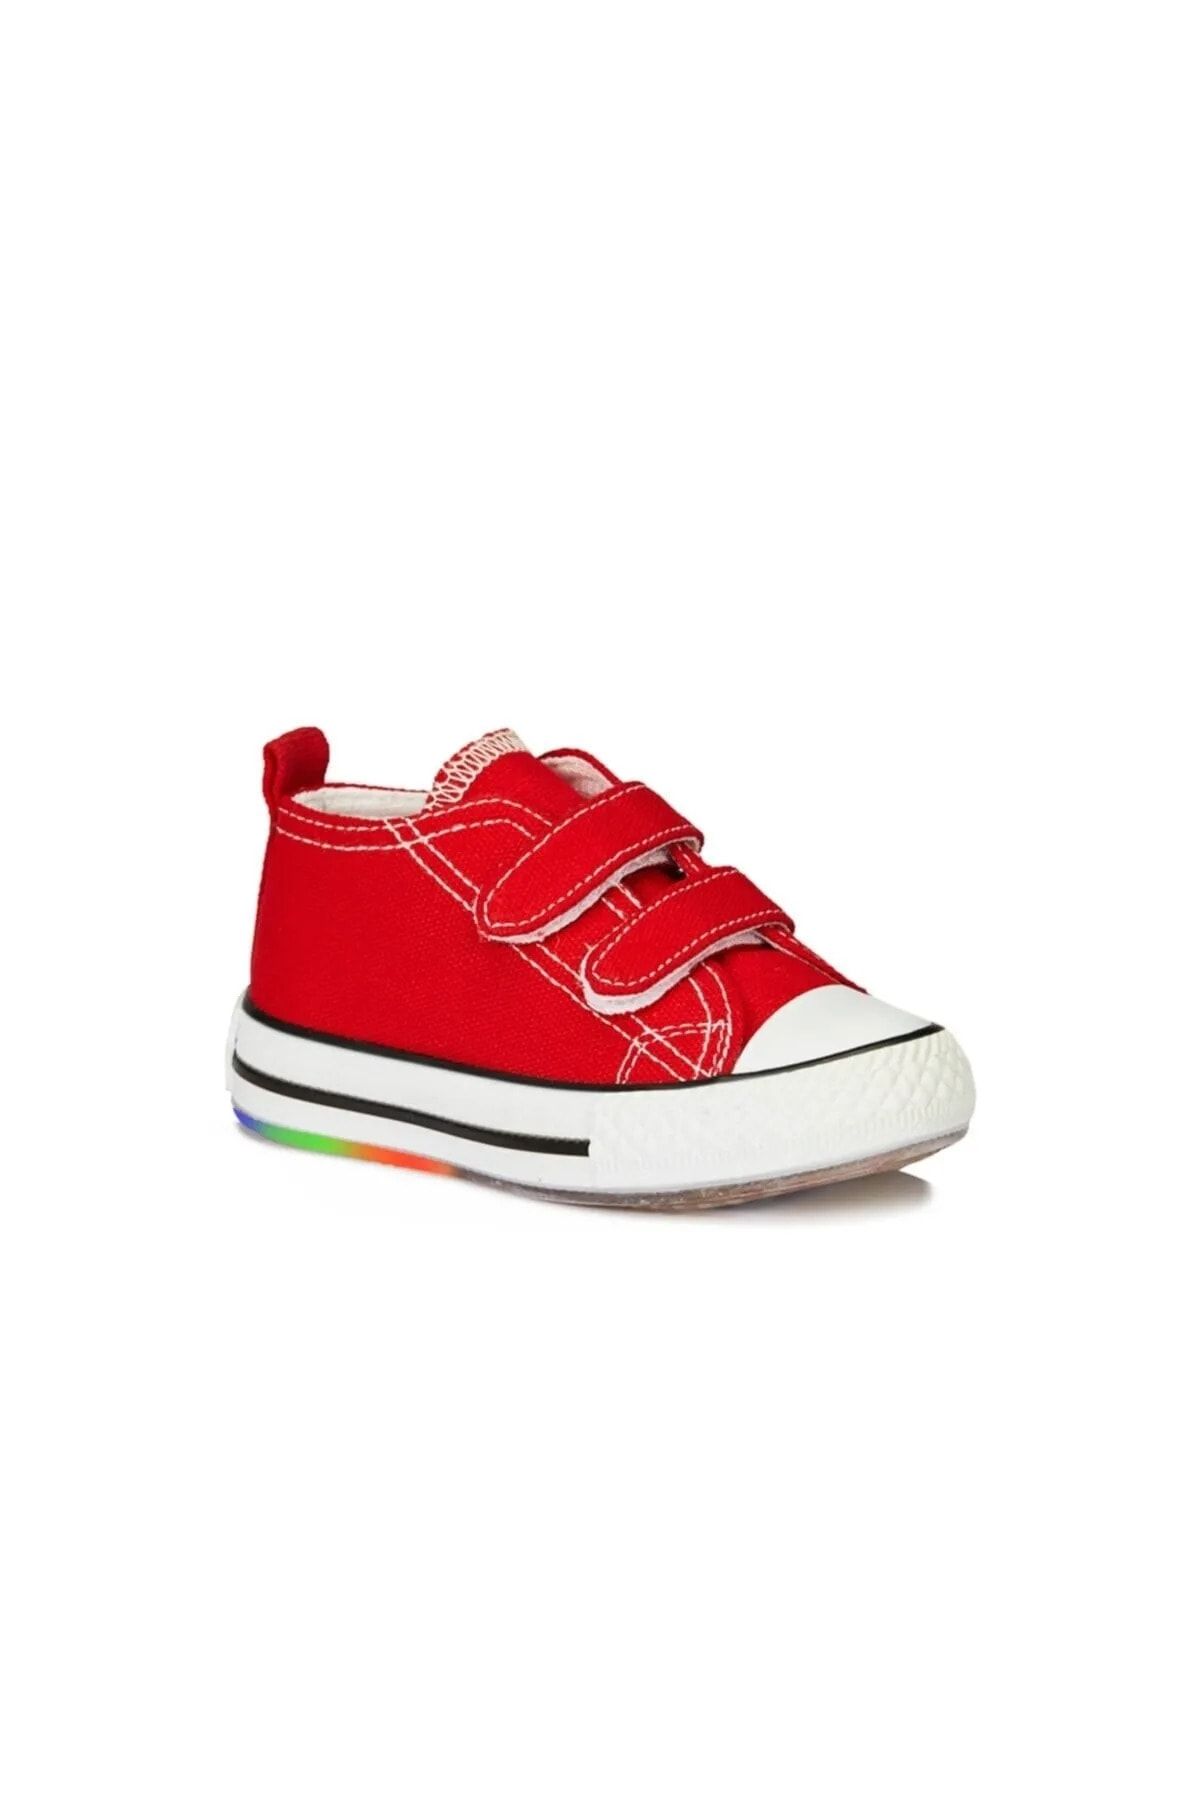 Vicco Işıklı Tekstil Keten Hafif Unisex Çocuk Ayakkabı